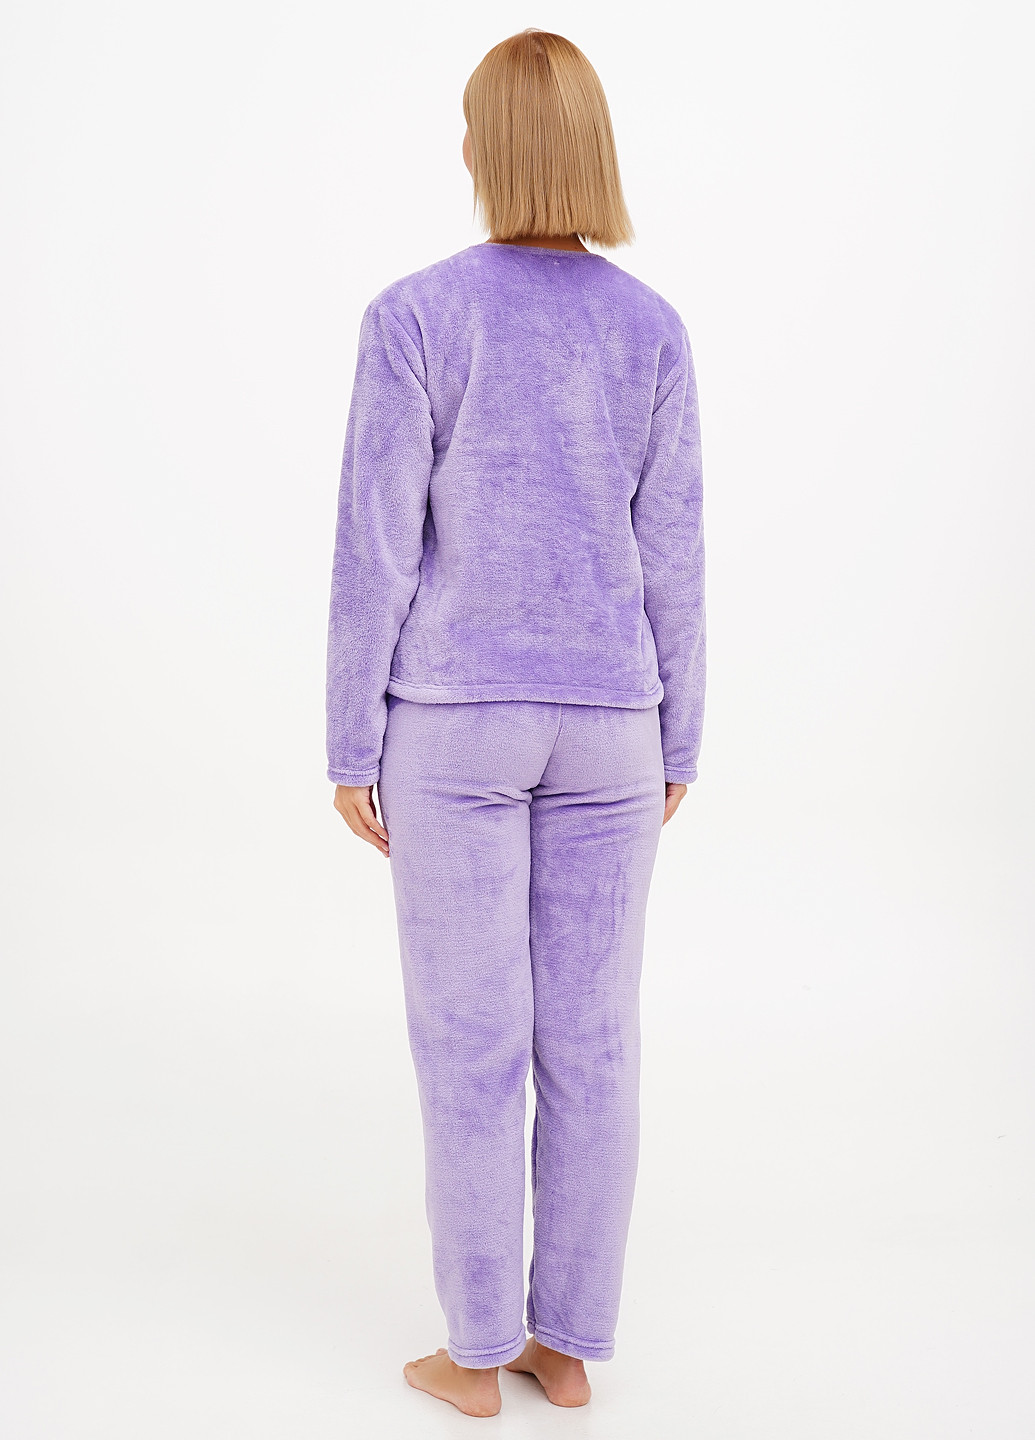 Фиолетовая всесезон пижама (лонгслив, брюки) лонгслив + брюки Aniele